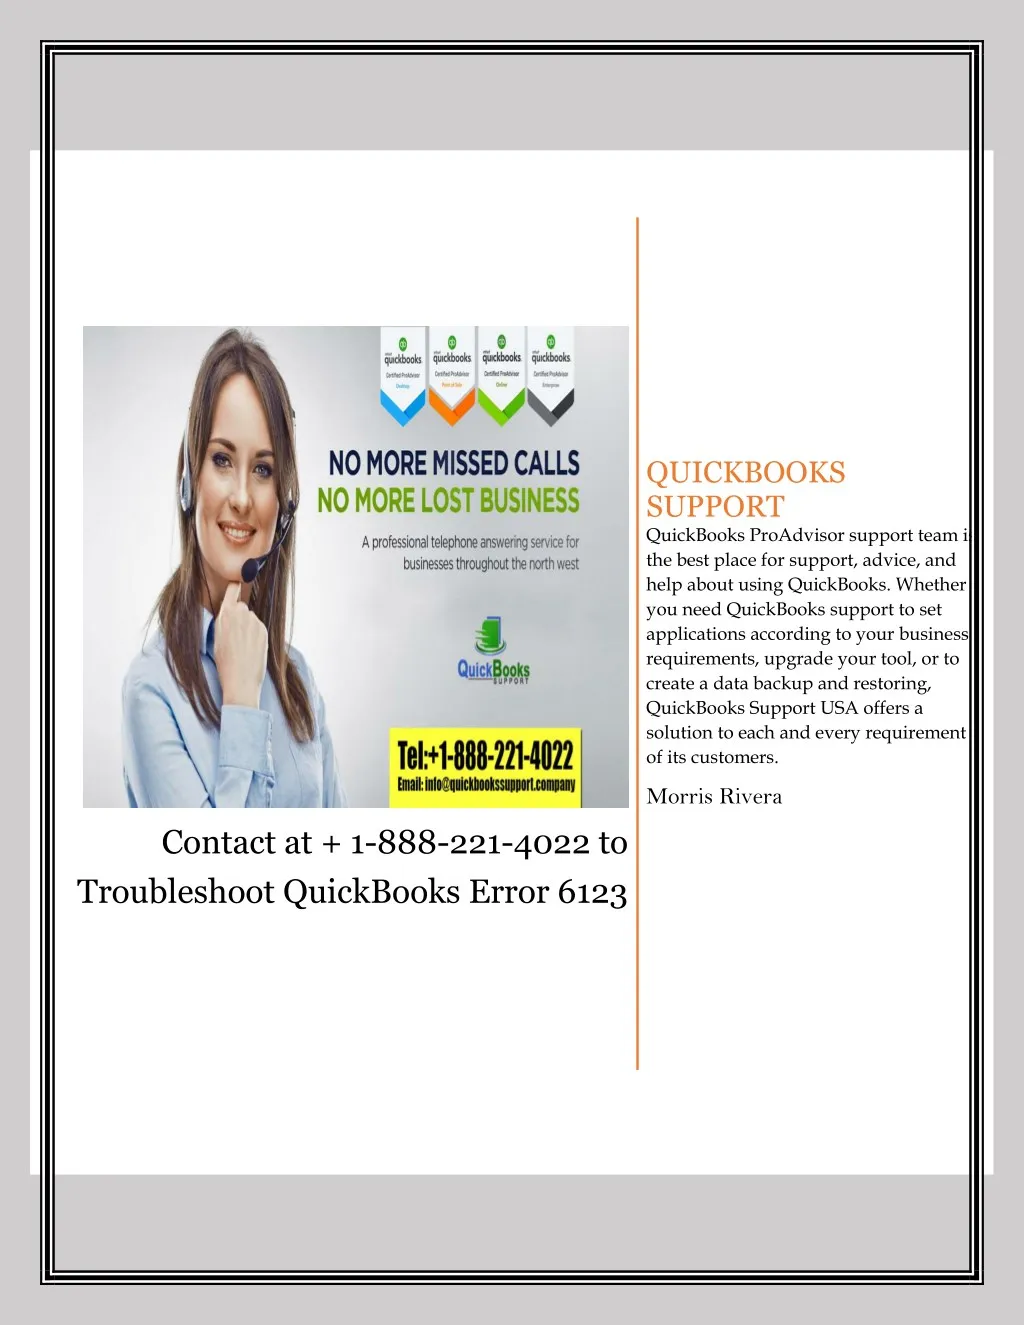 quickbooks support quickbooks proadvisor support